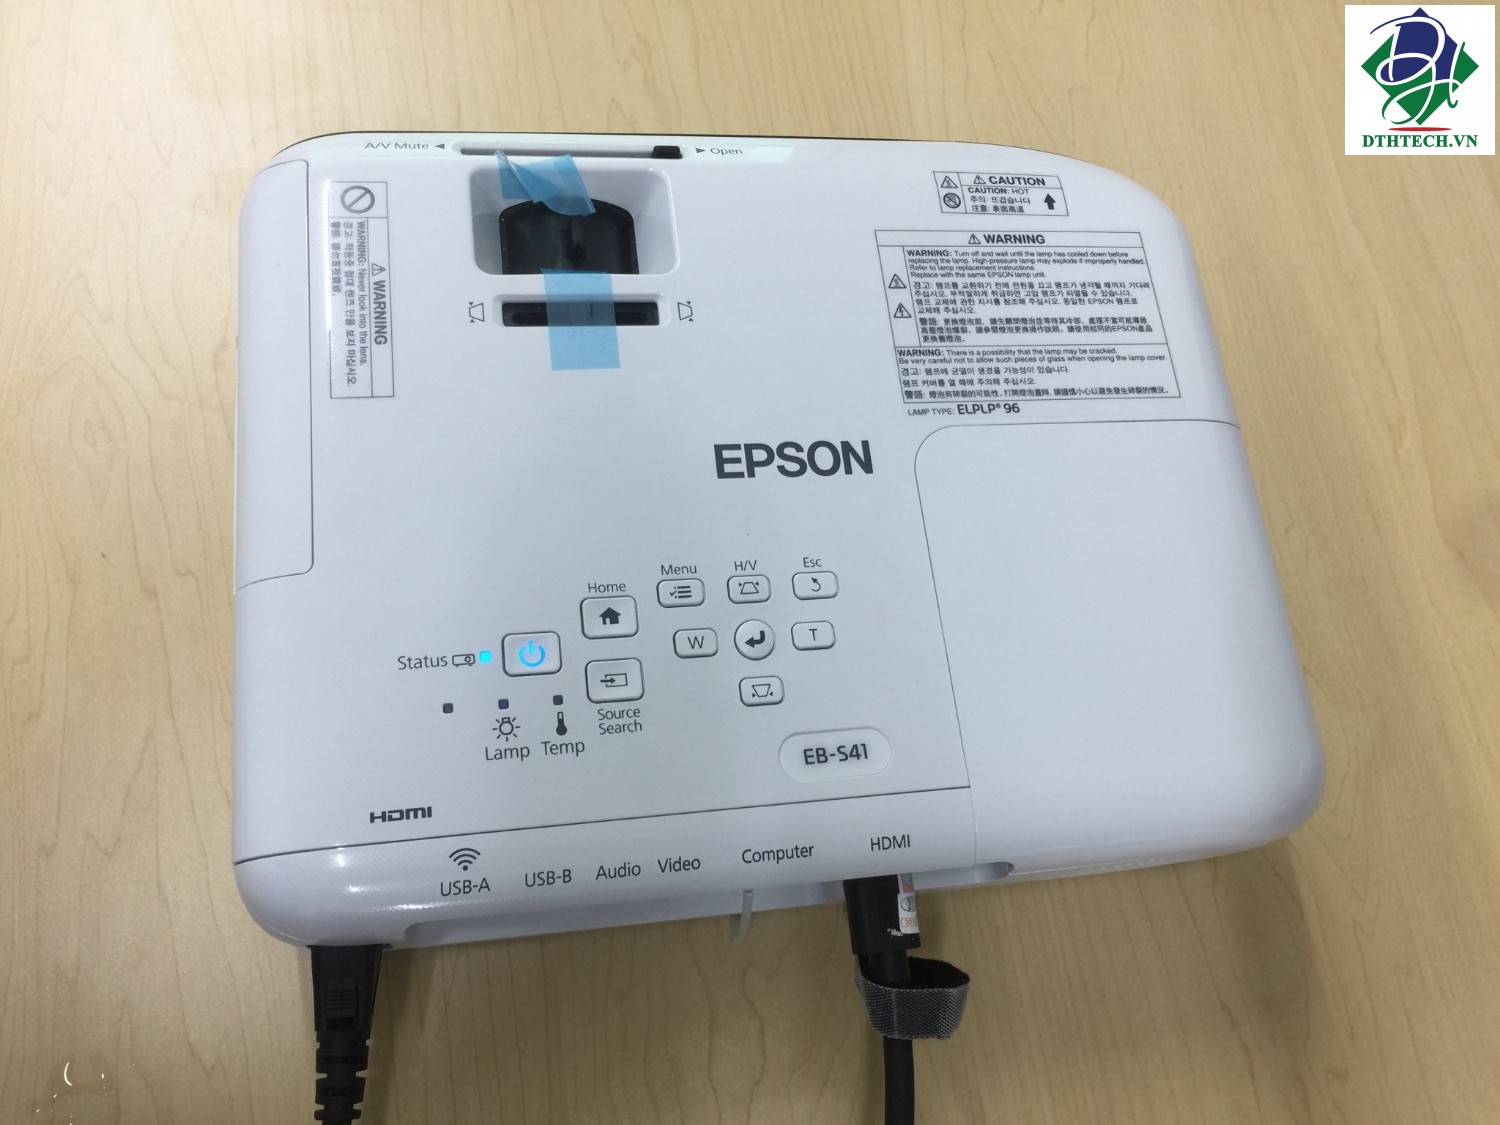 Vậy nên mua máy chiếu Epson EB-S41 ở đâu để được chất lượng?